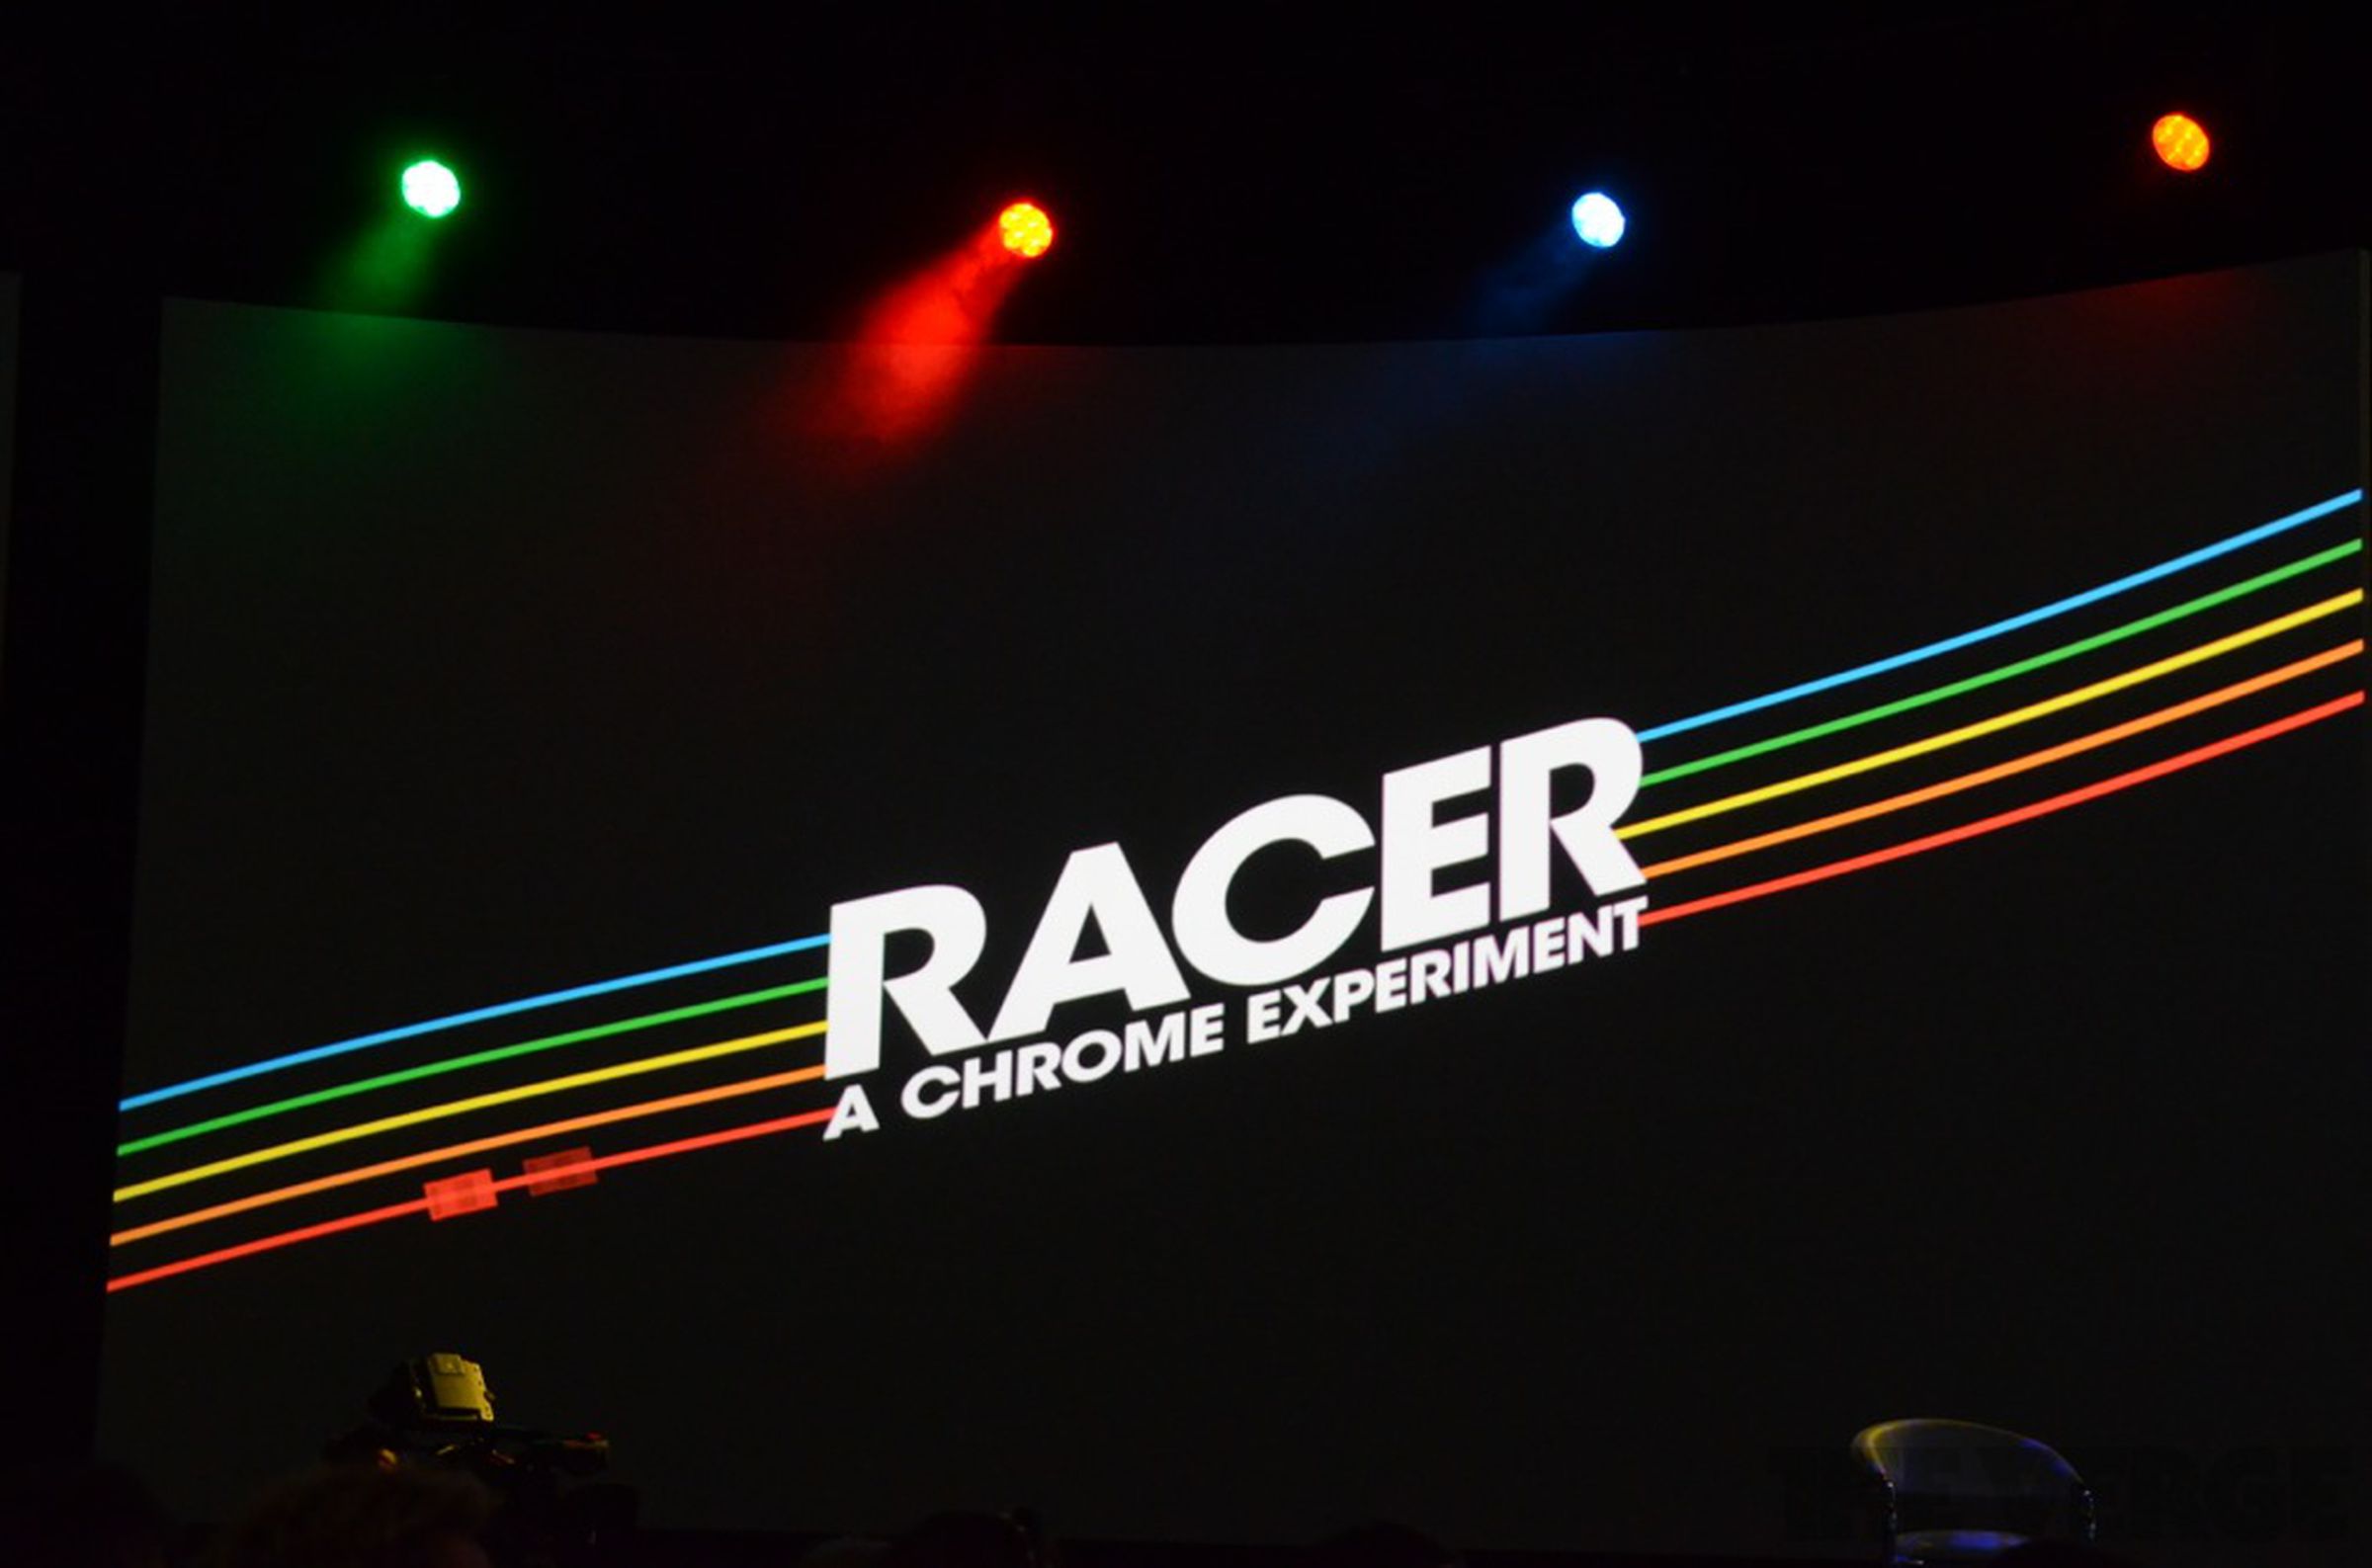 Racer Chrome Experiment photos